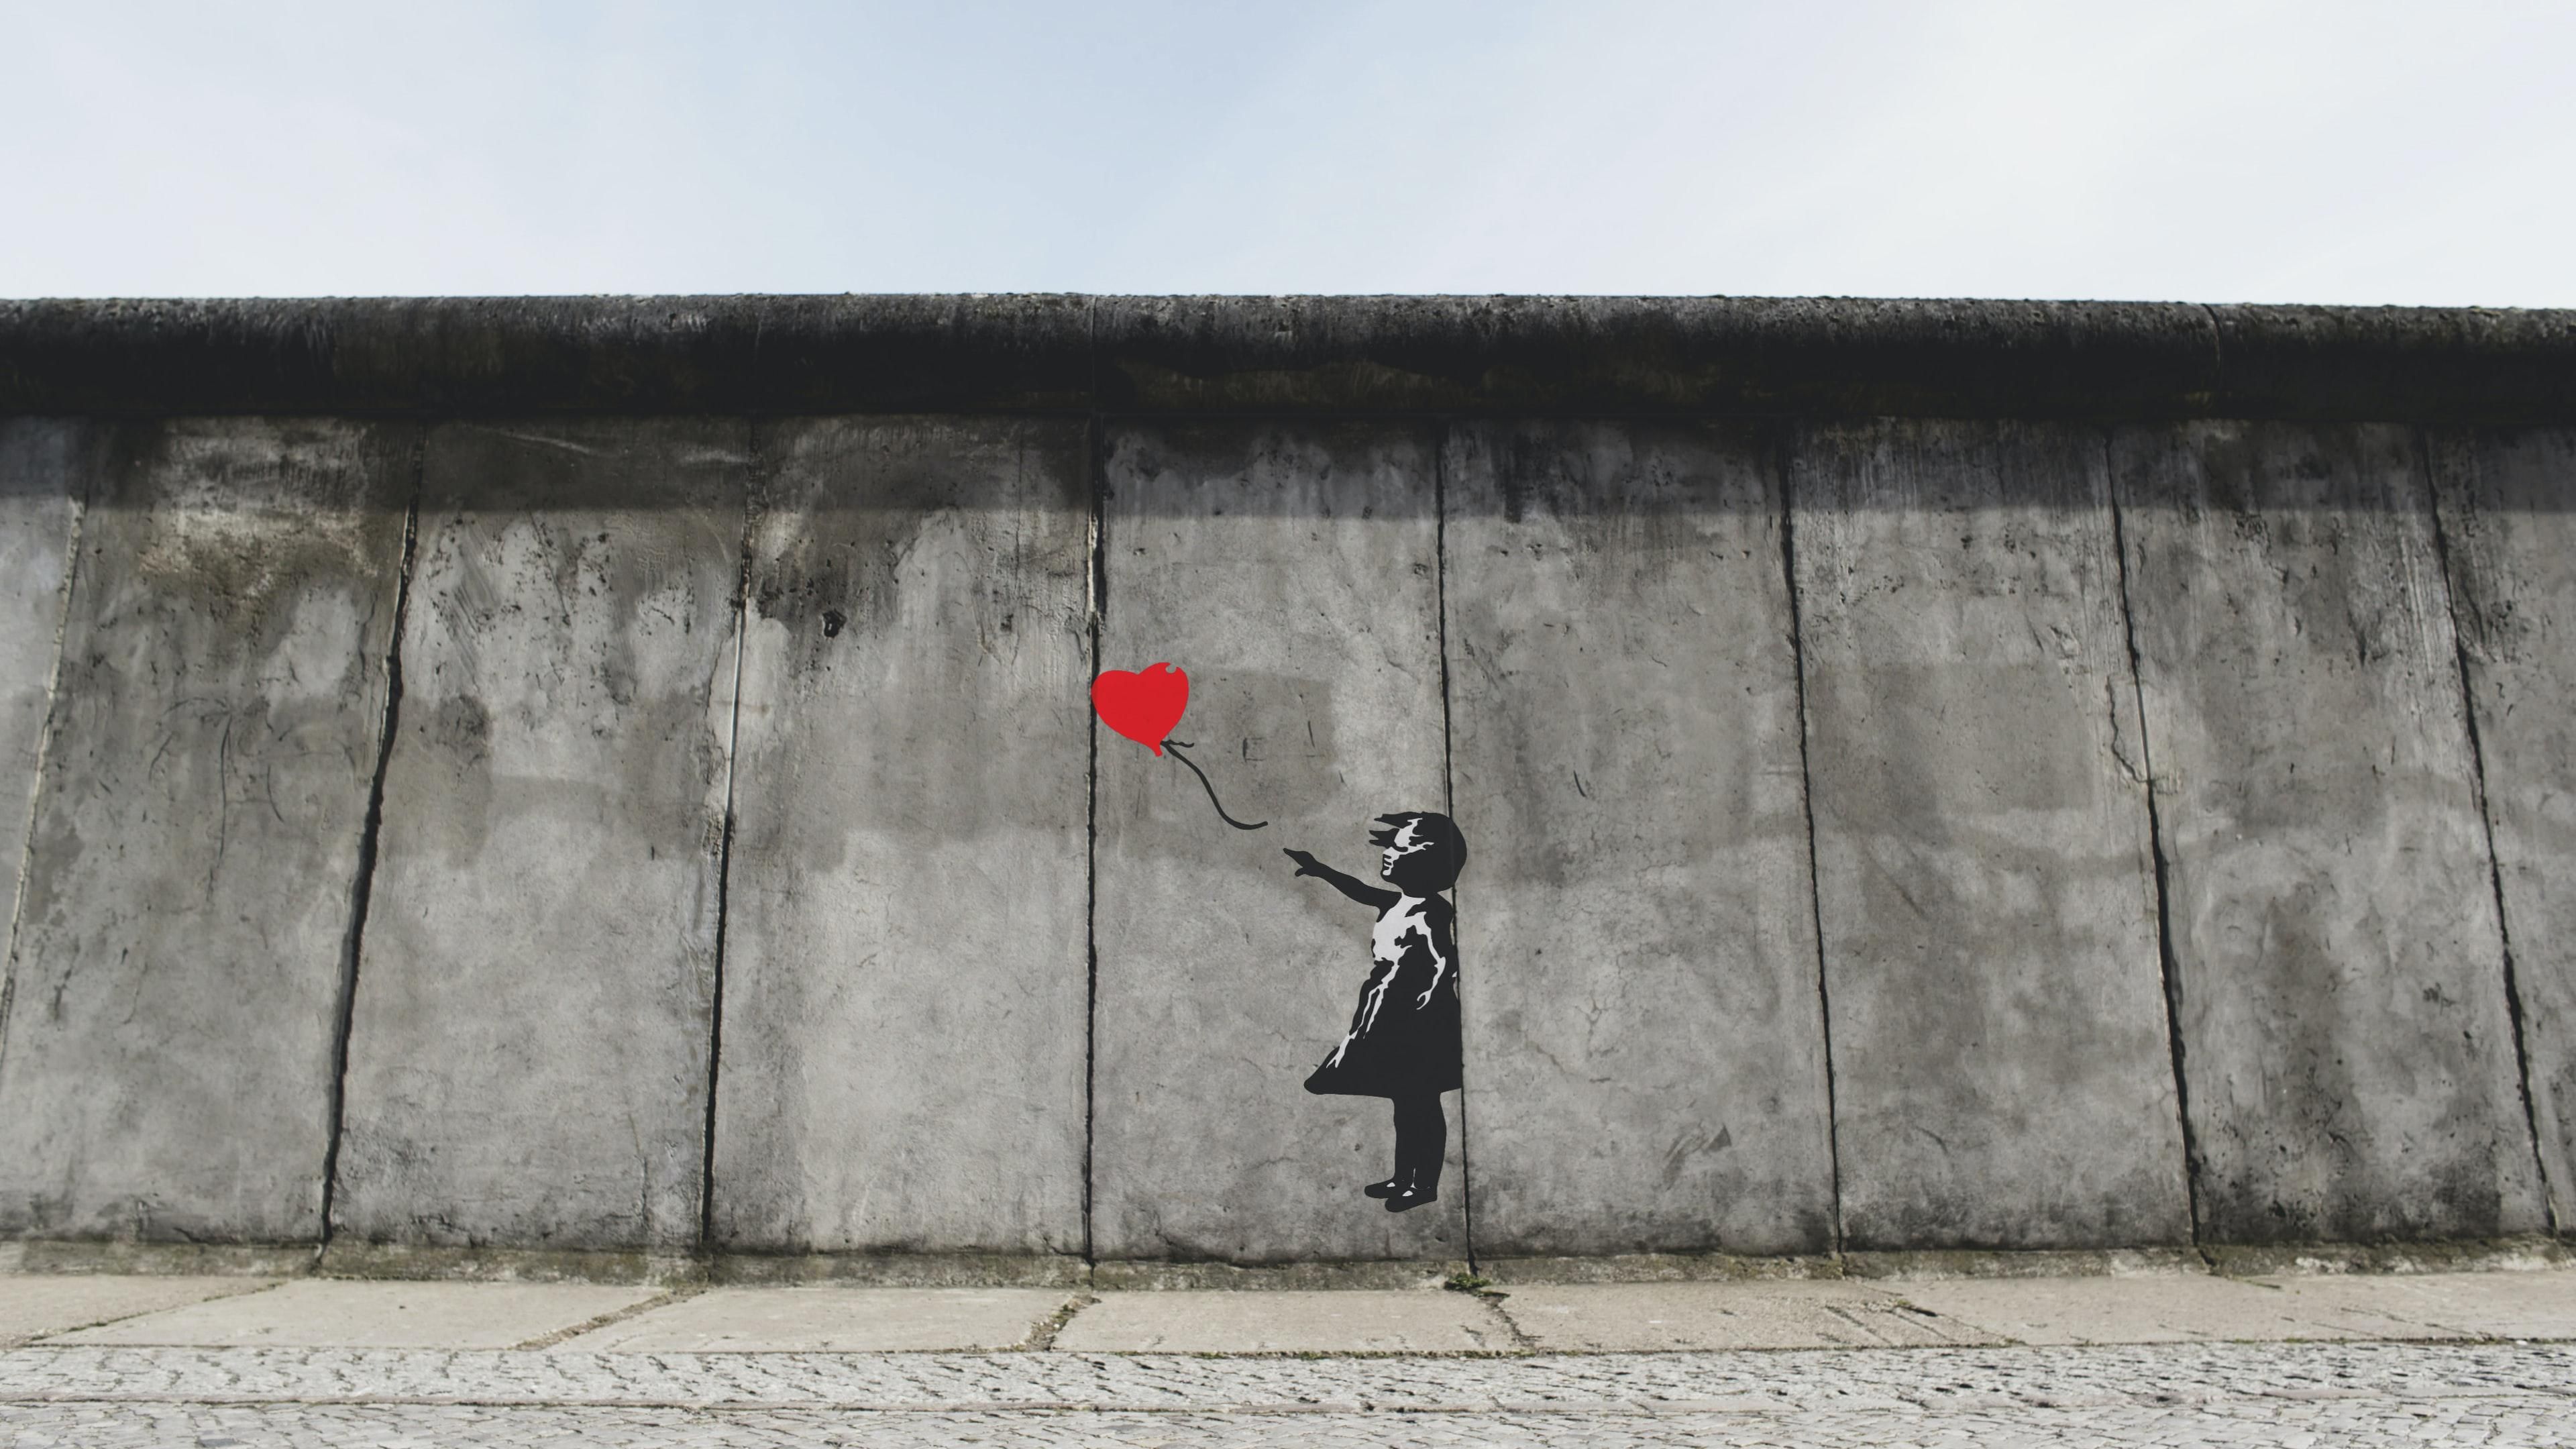 Banksy "Ballon Girl" alkotása egy falon, borongós időben